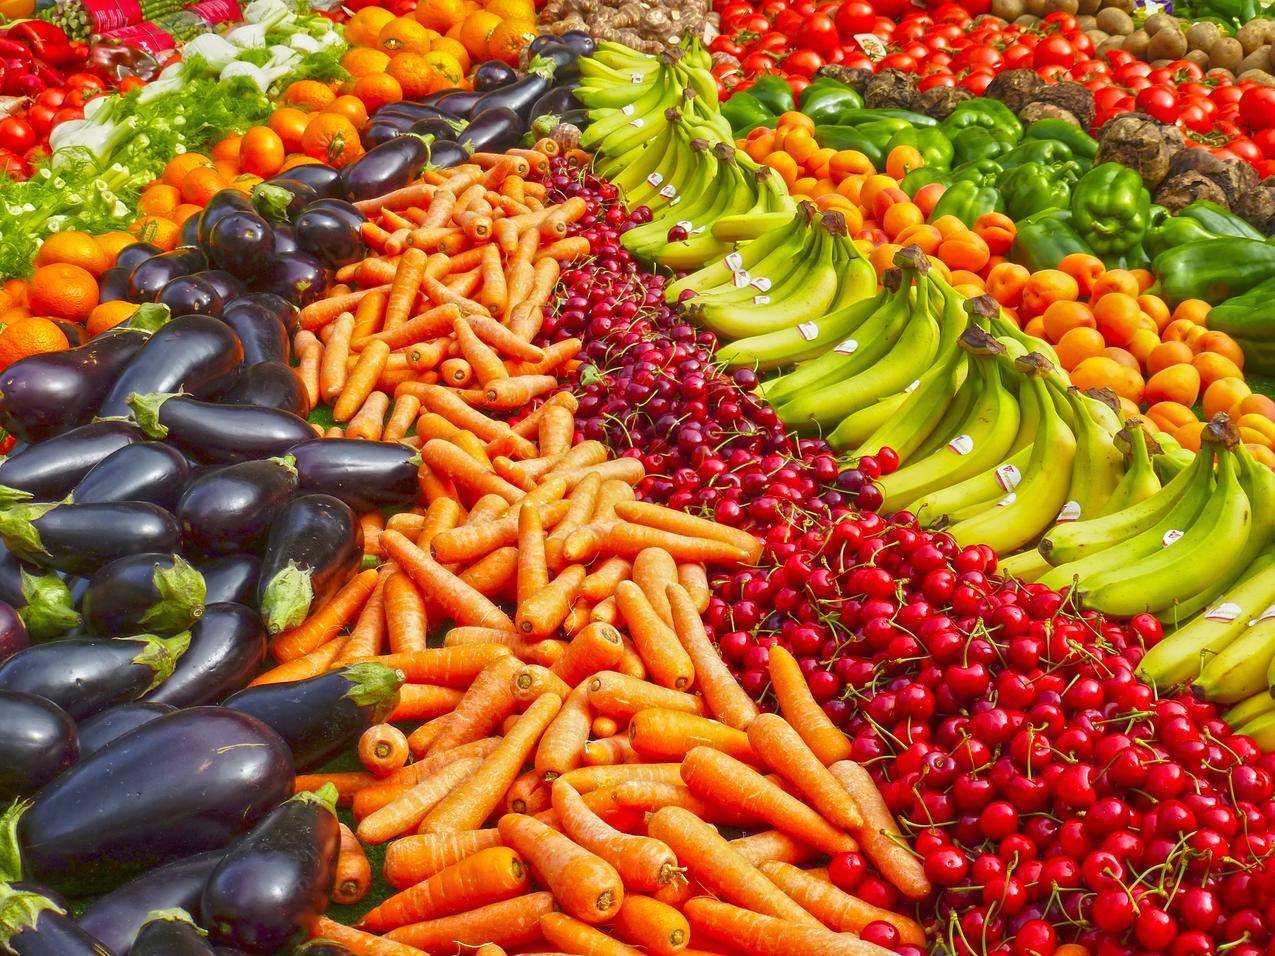 cc0免费可商用食品,健康,蔬菜,红色高清图片